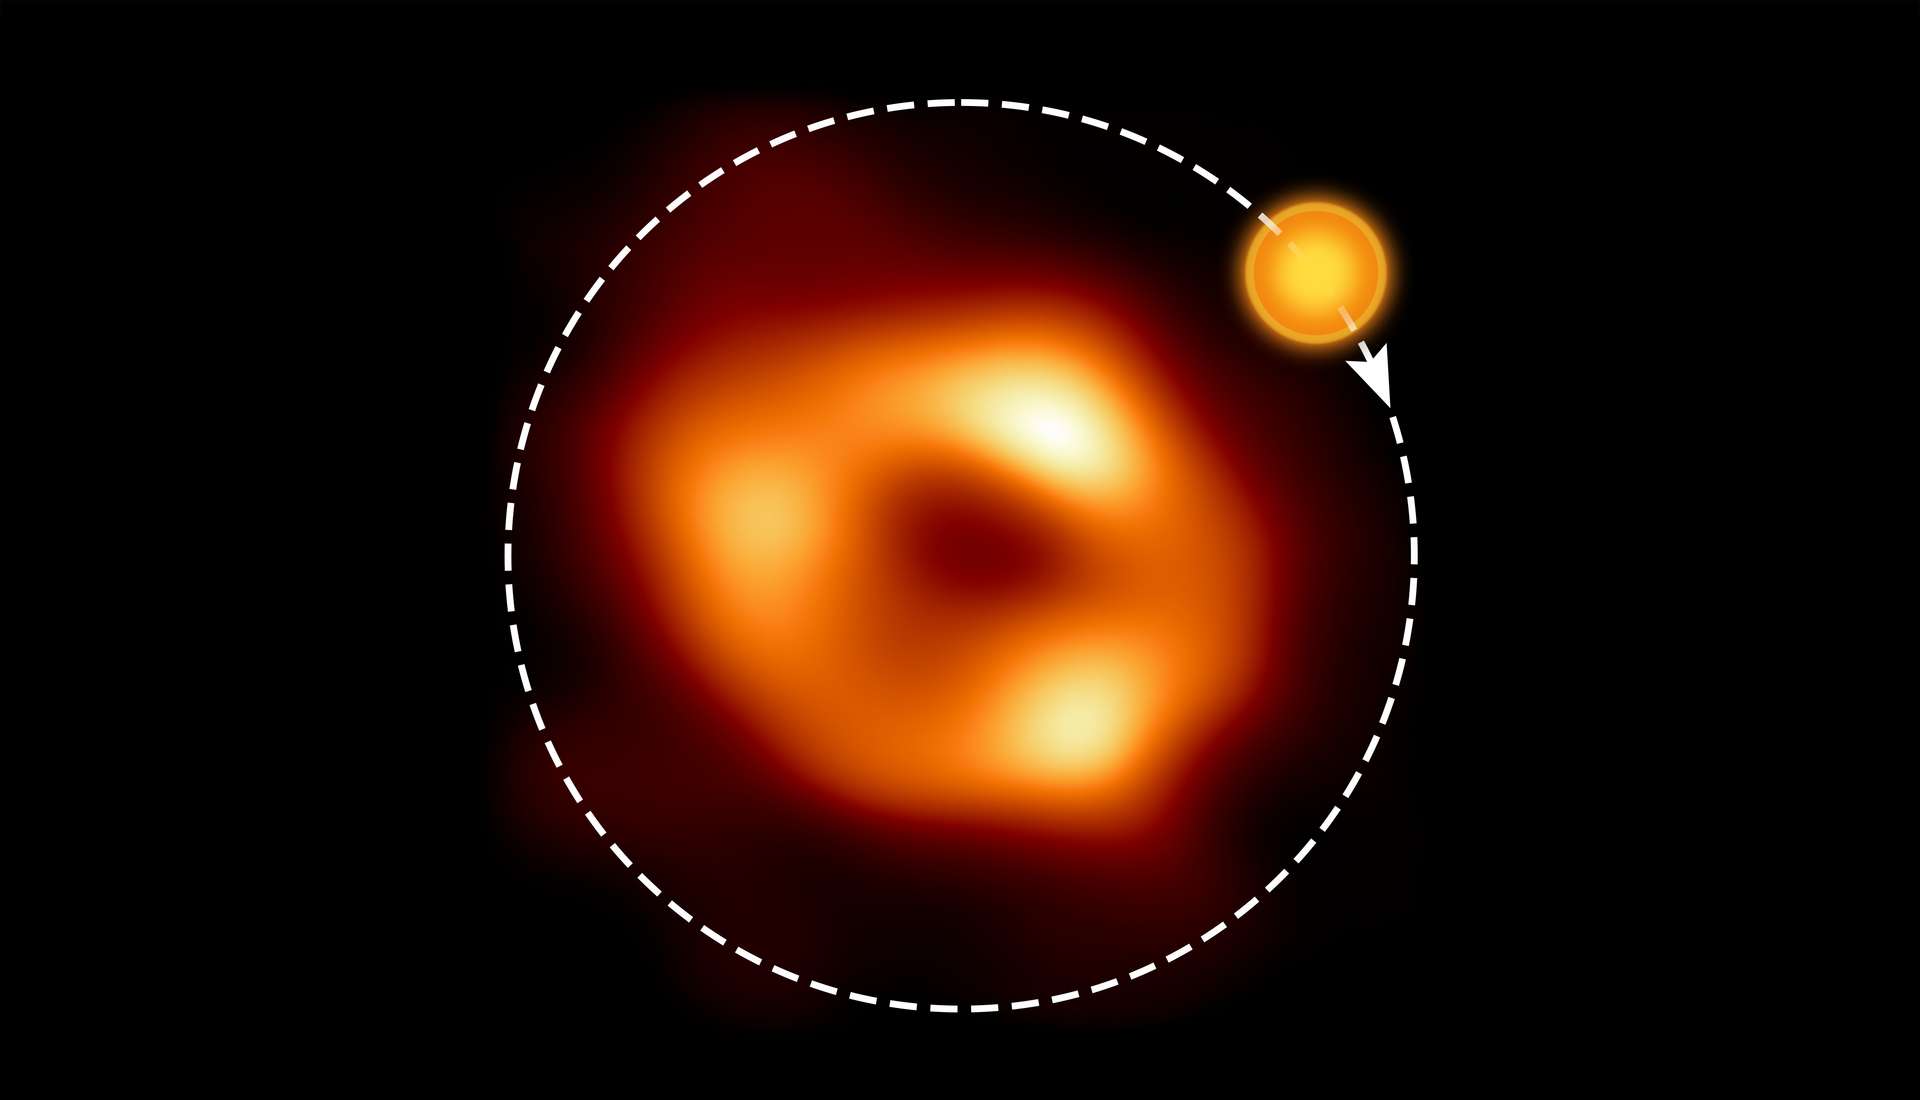 ¡El agujero negro gigante en el centro de nuestra galaxia ha entrado en erupción y los astrónomos lo han visto todo!